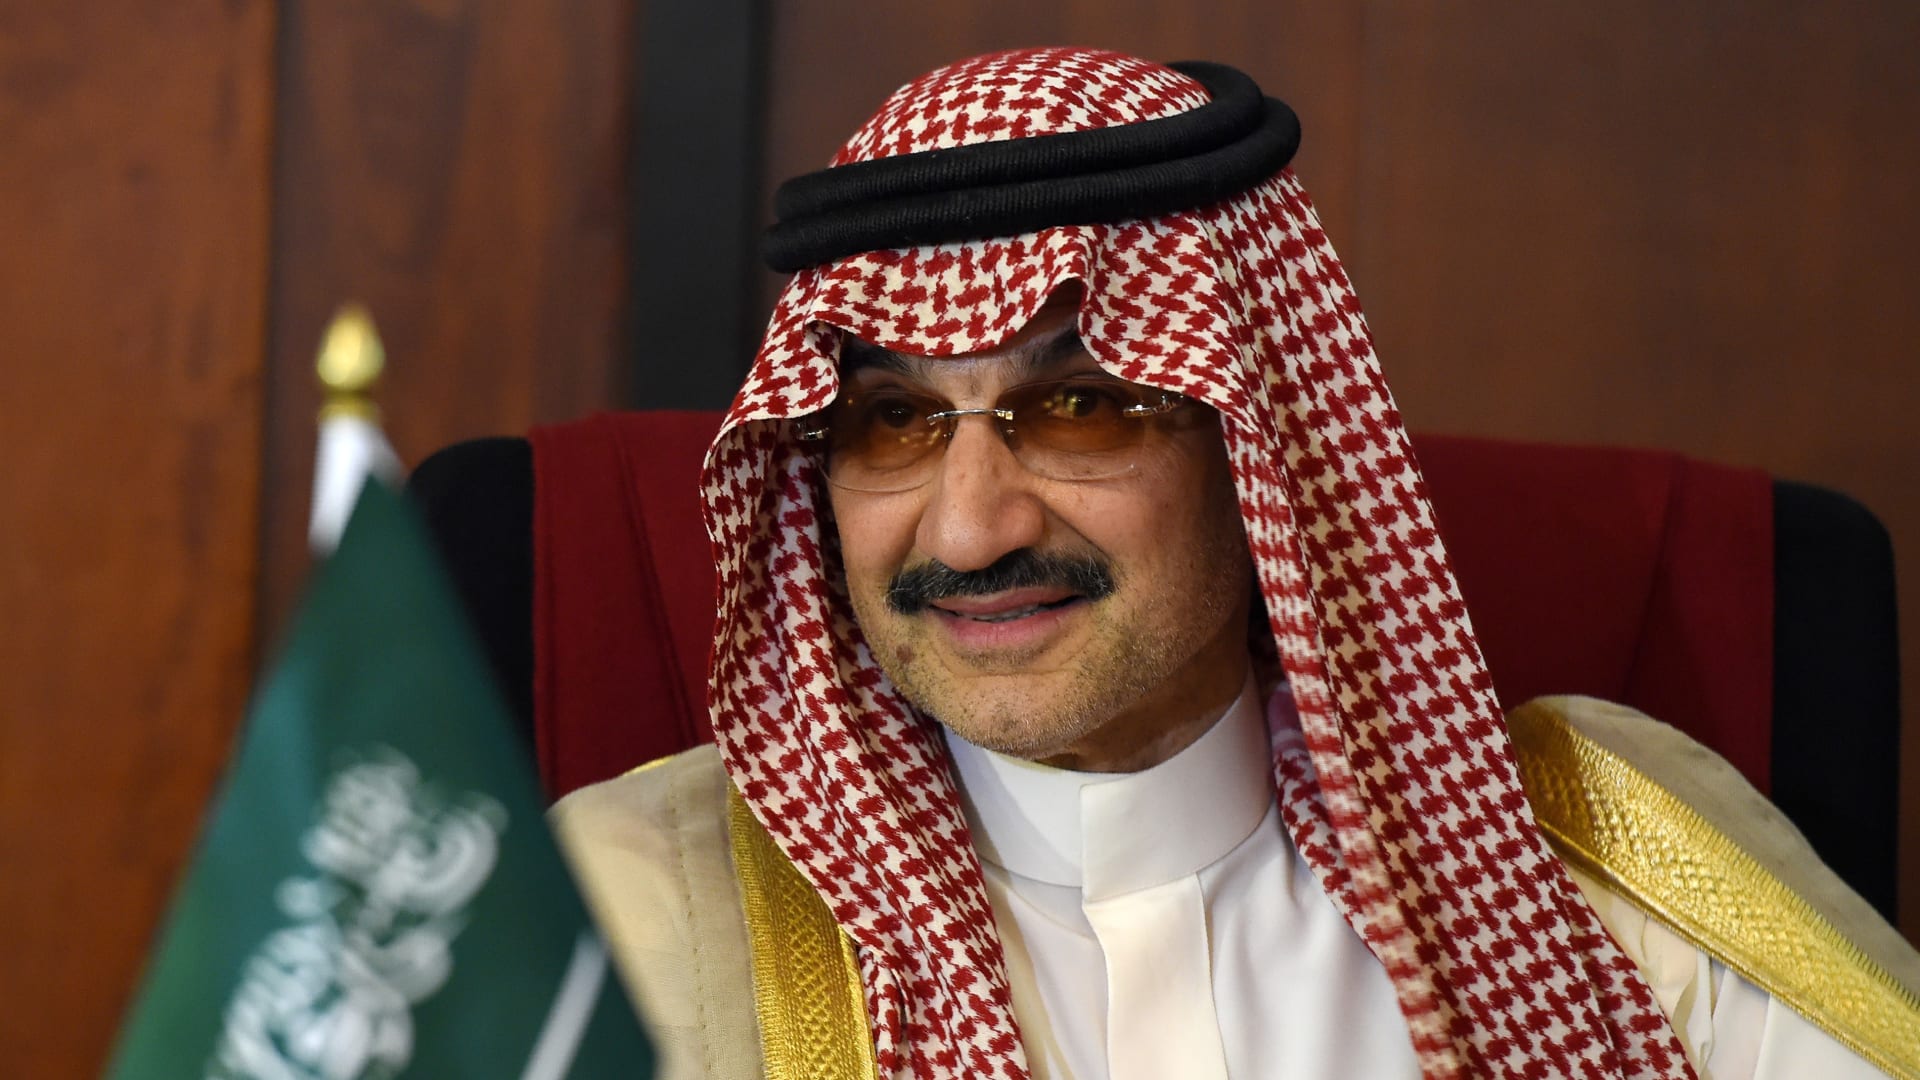 بعد سجال بين الأمير السعودي ورجل الأعمال.. الوليد بن طلال يعلق على استحواذ إيلون ماسك على تويتر